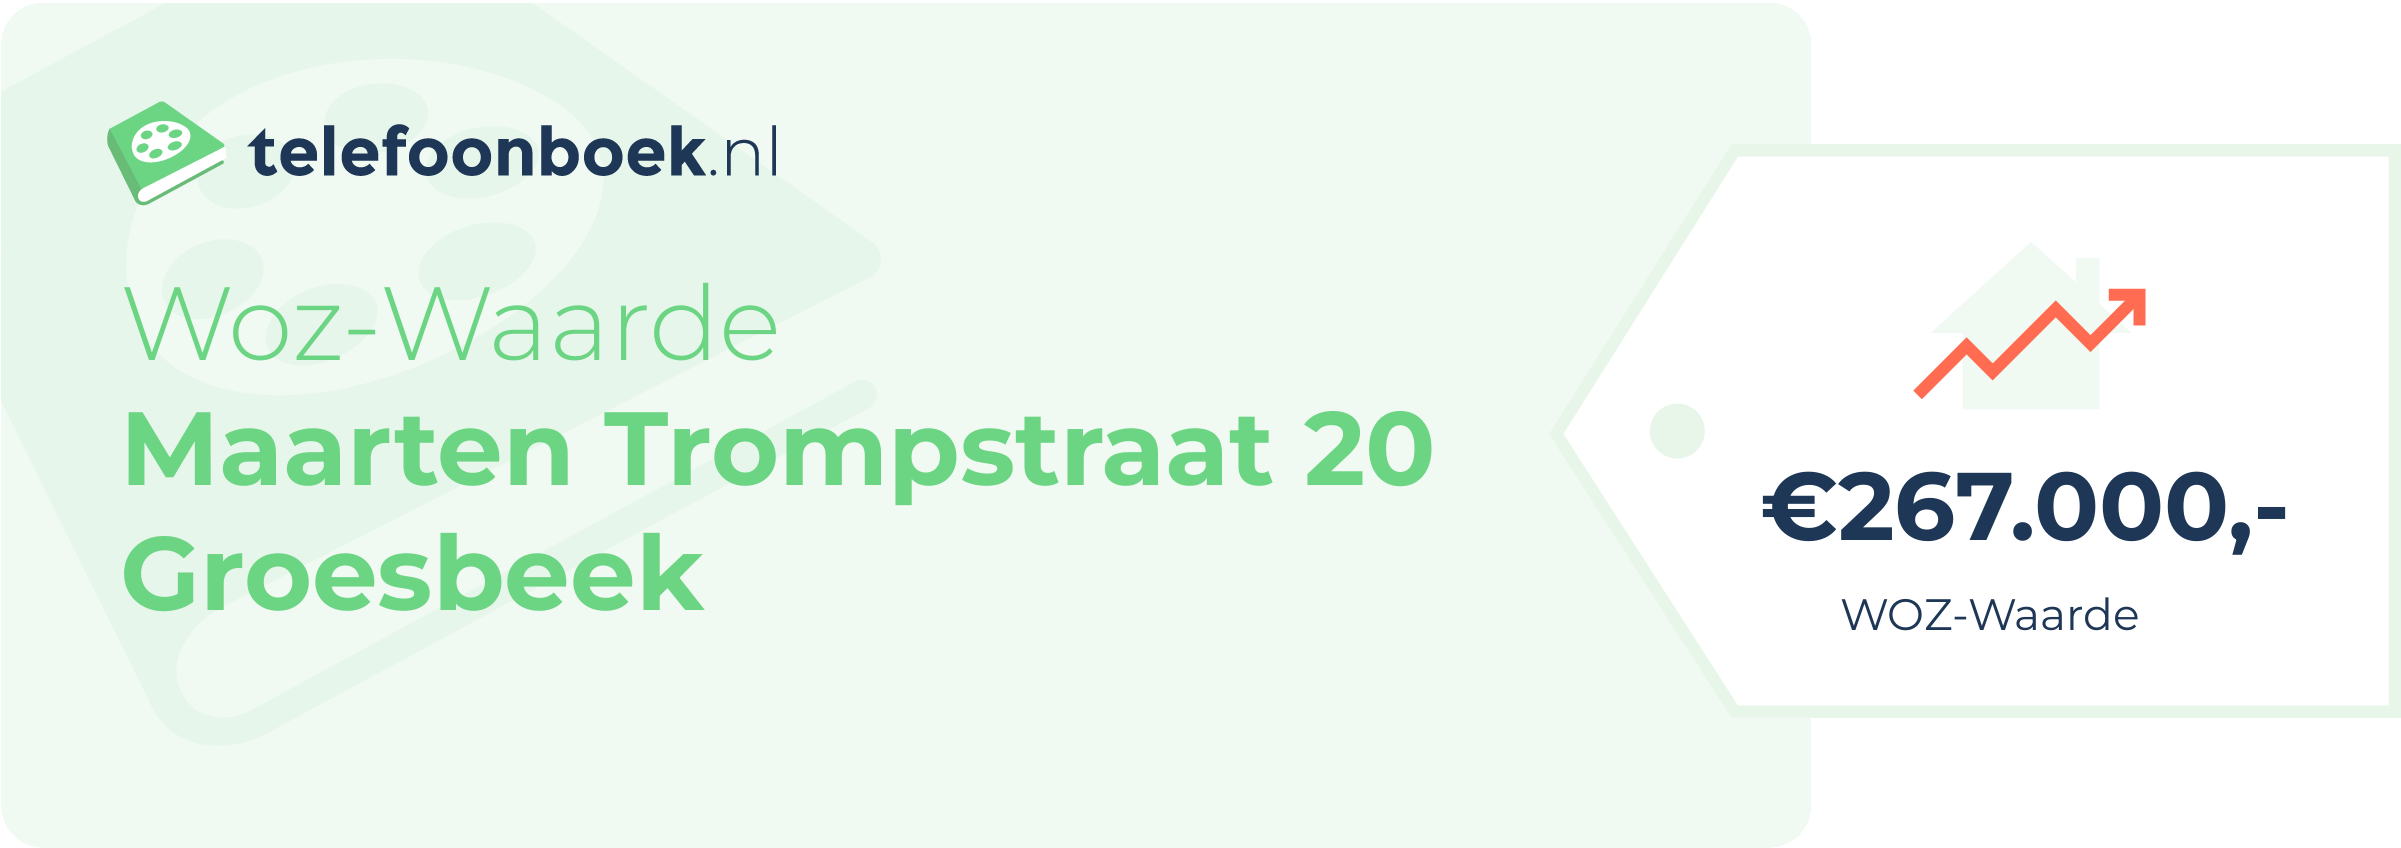 WOZ-waarde Maarten Trompstraat 20 Groesbeek